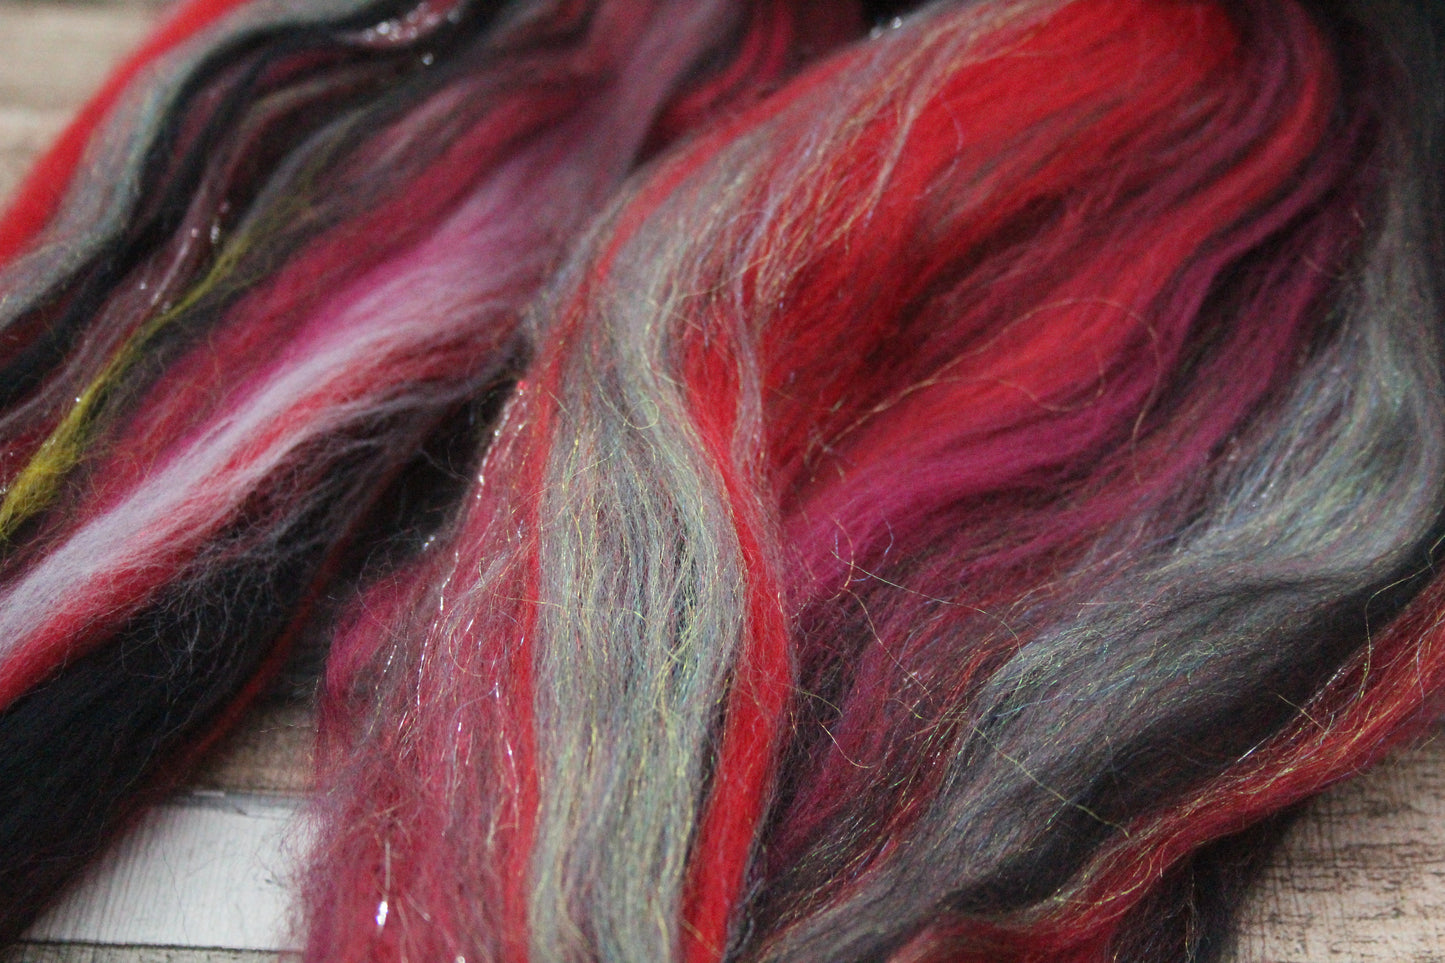 Merino Wool Blend - Red Grey Black - 22 grams / 0.7 oz  - Fibre for felting, weaving or spinning